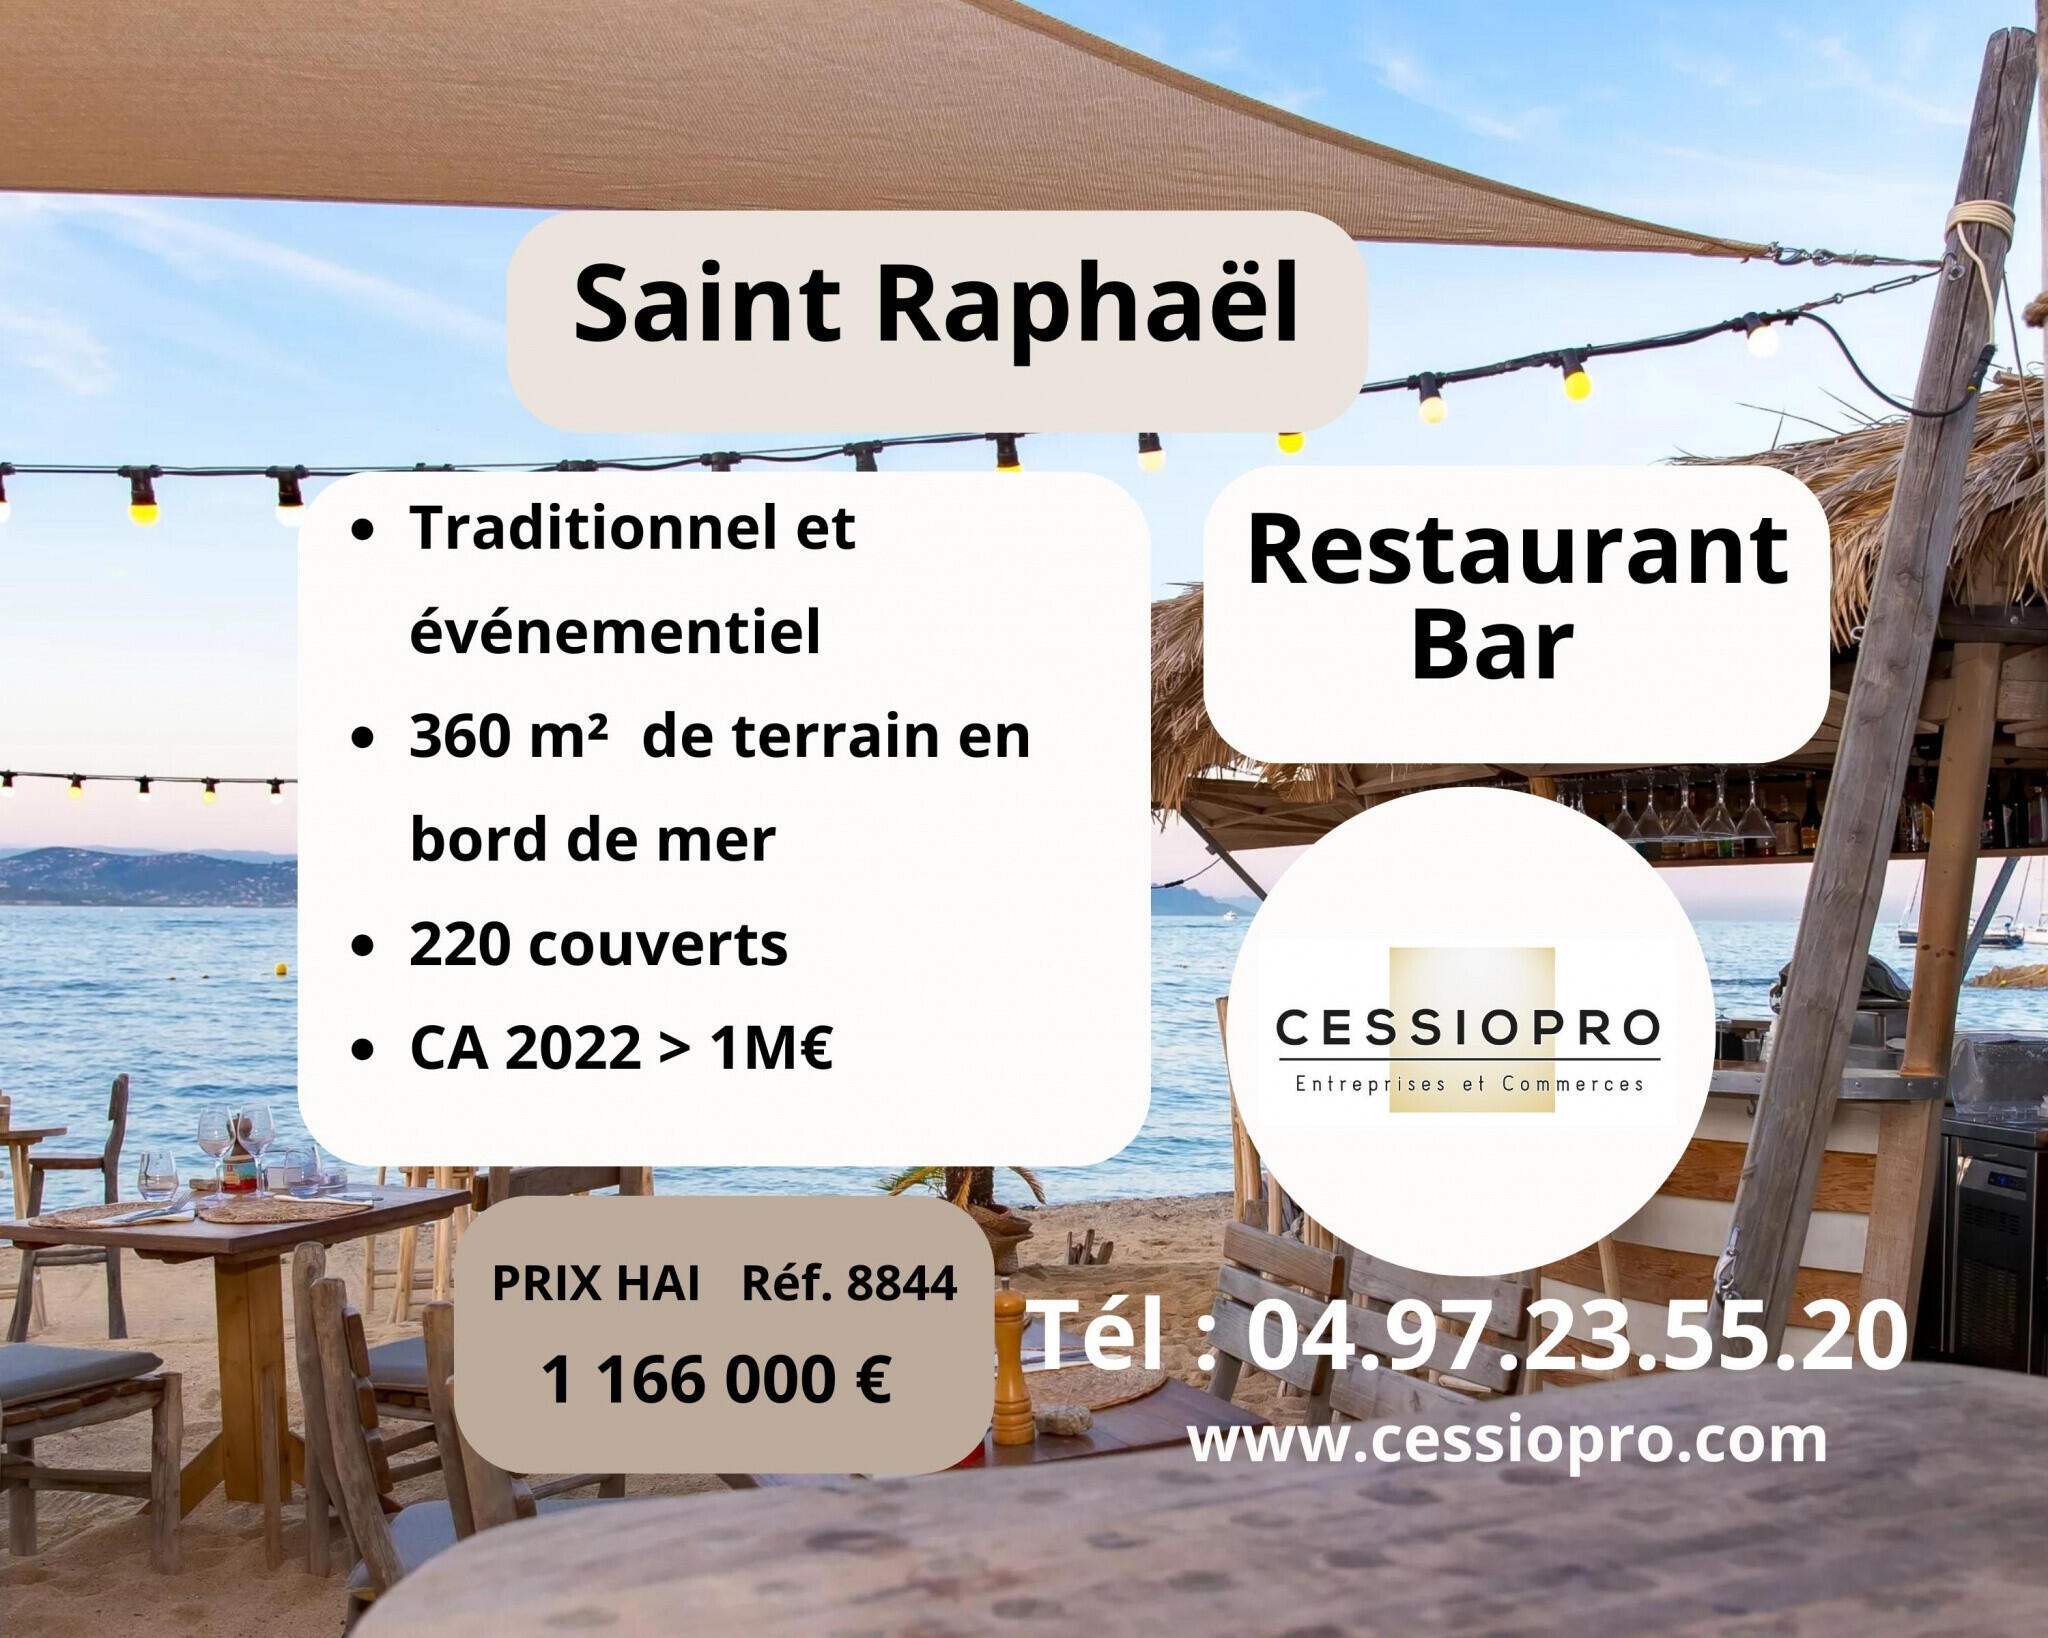 Vend restaurant bar traditionnel à St Raphaël